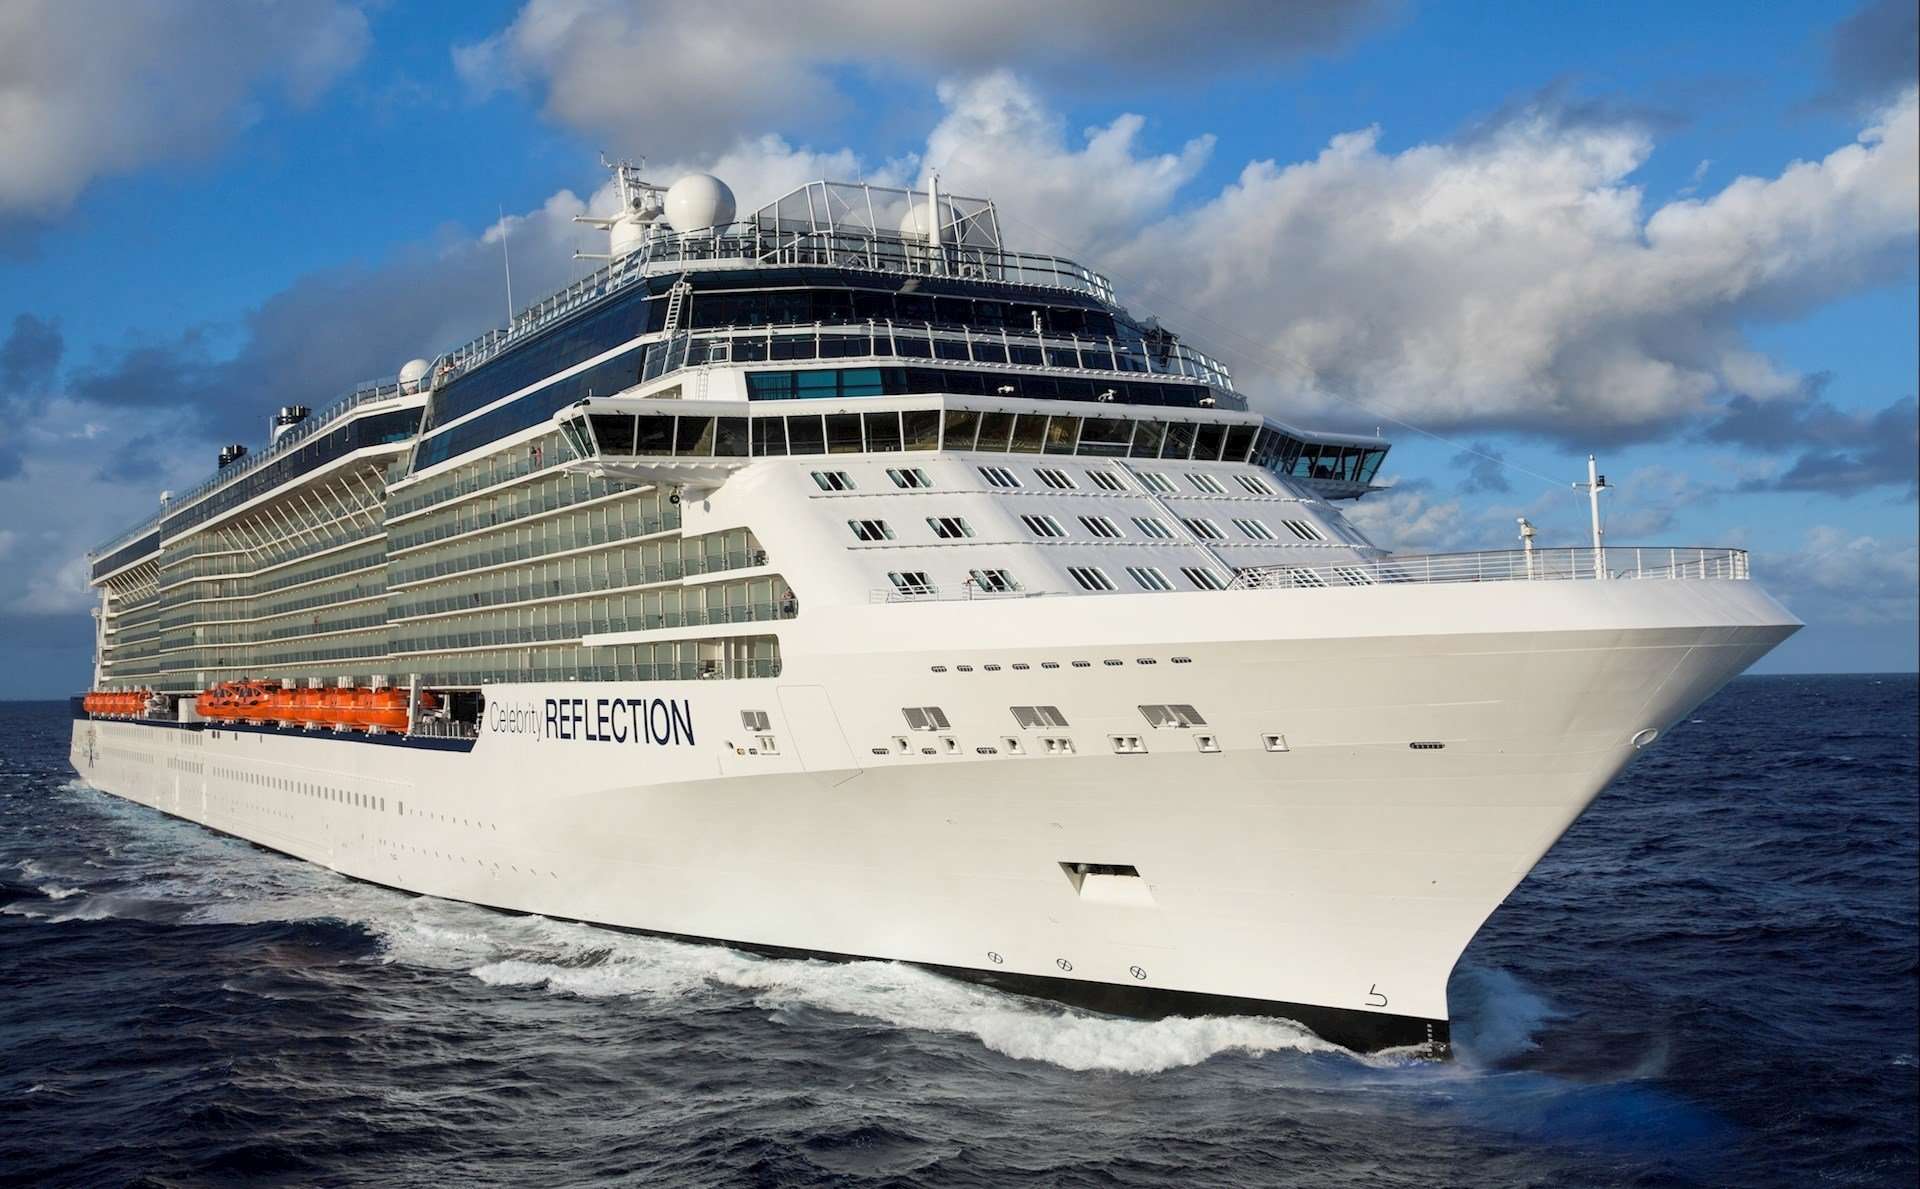 Celebrity Reflection Cruise Ship 2021 / 2022